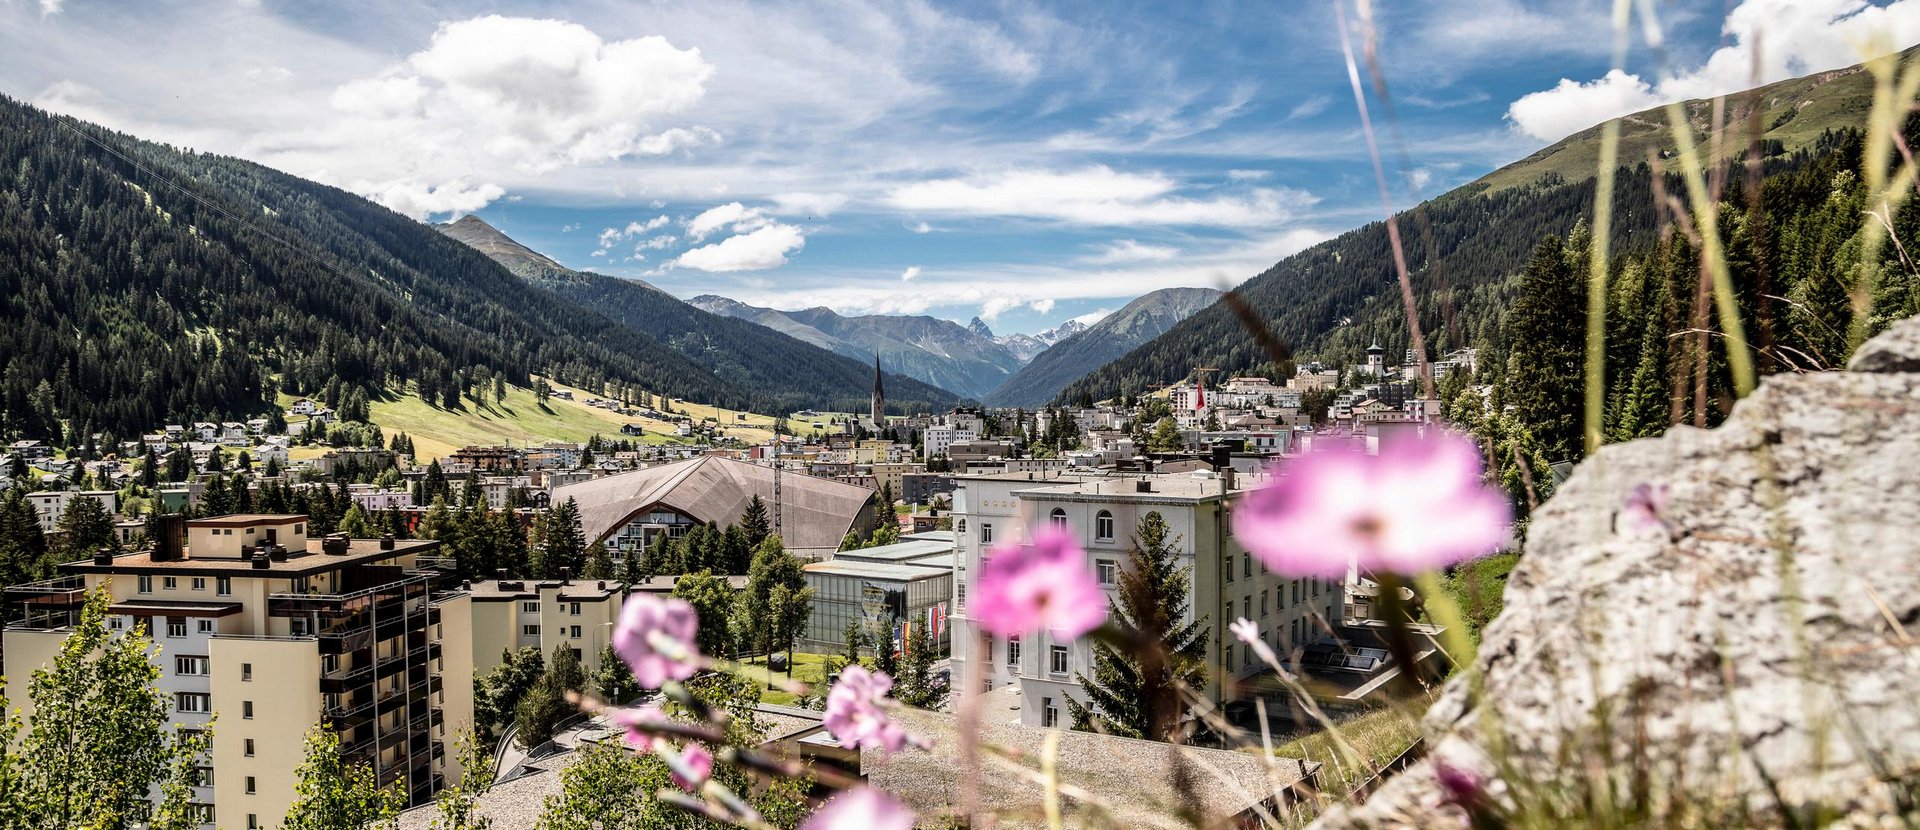 Region Davos Klosters